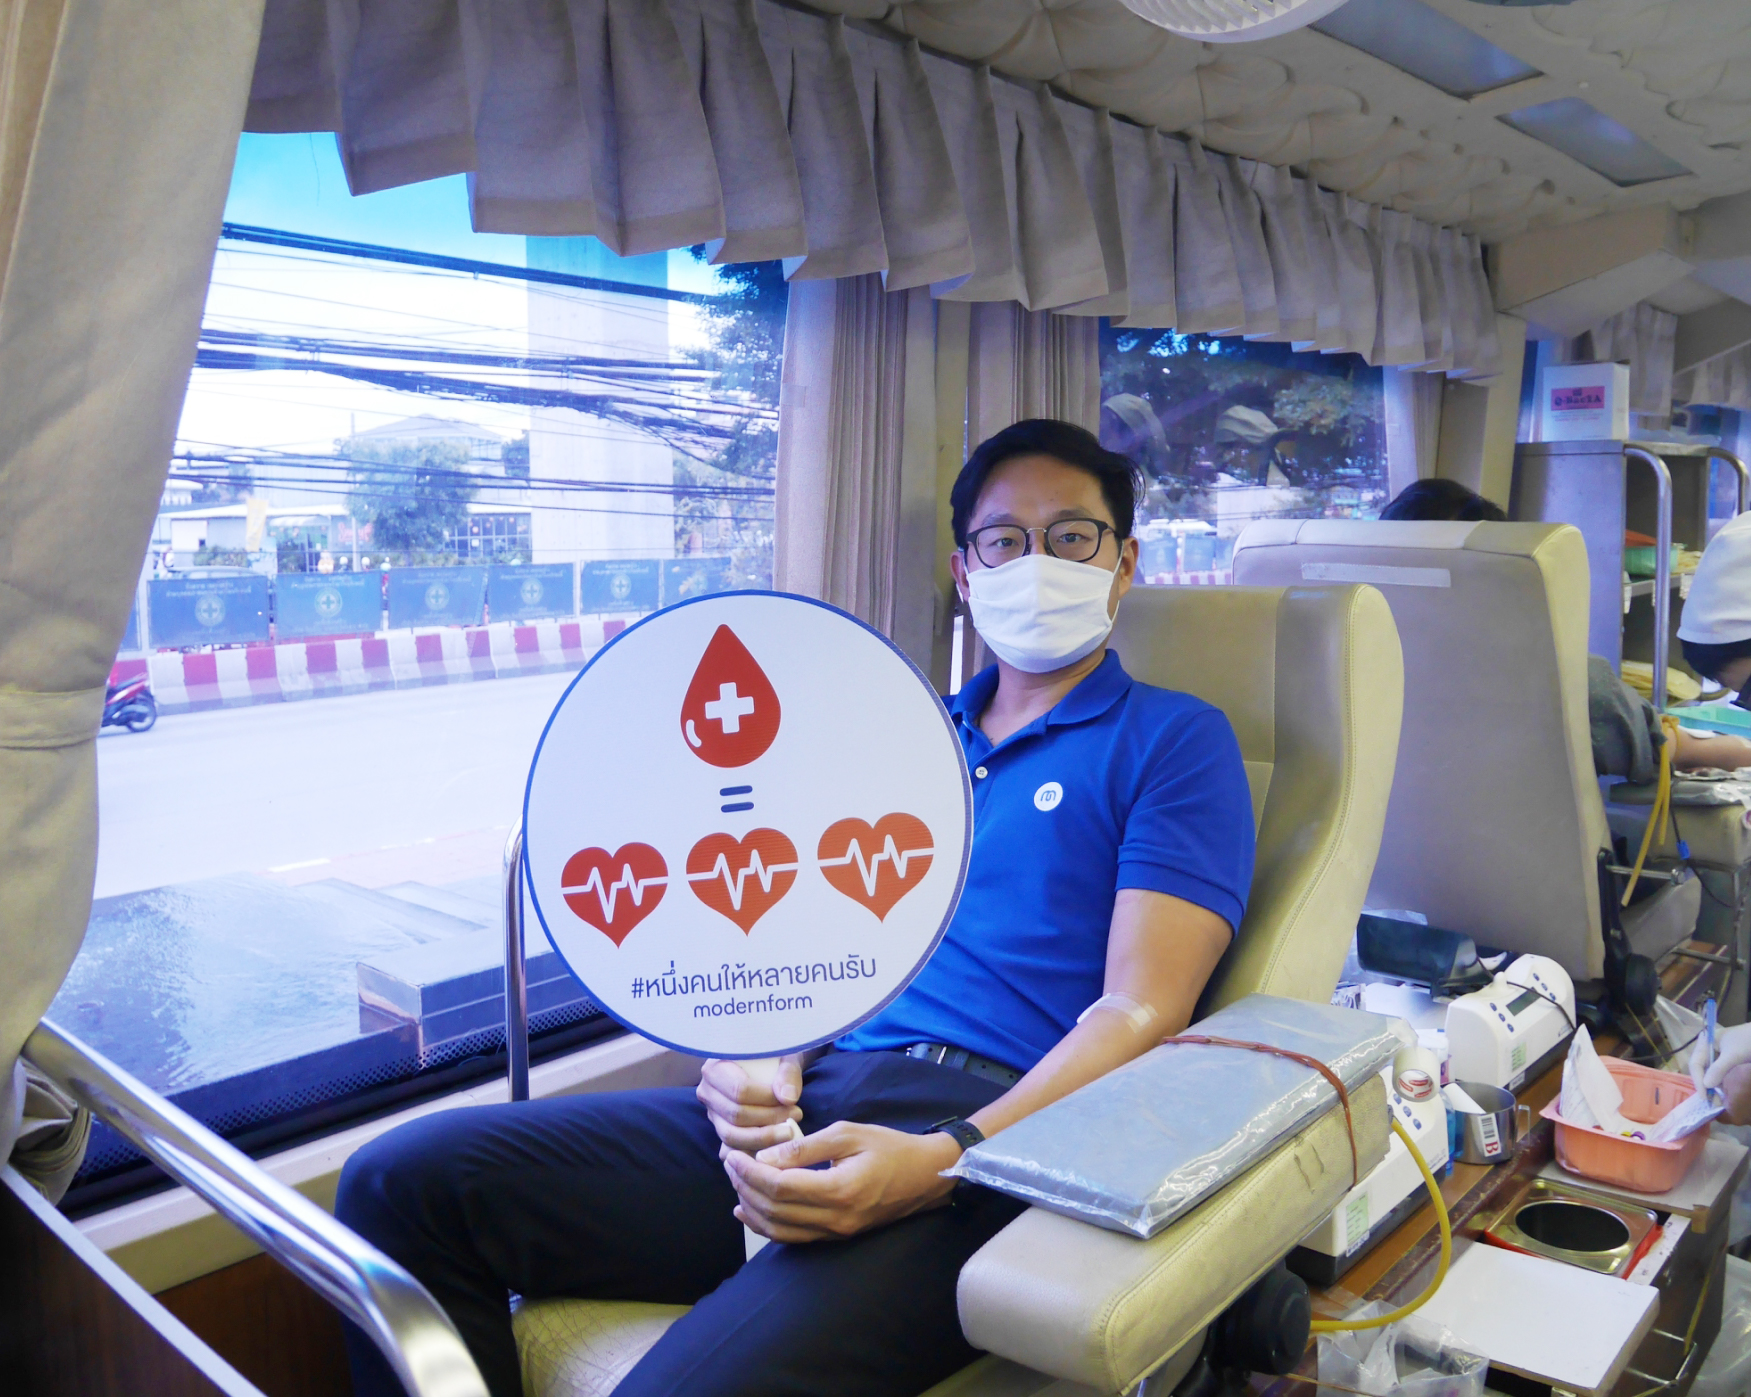 โมเดอร์นฟอร์มจัดกิจกรรม ปันฝันปันรัก Blood Donation 2020 บริจาคโลหิตให้แก่สภากาชาดไทย